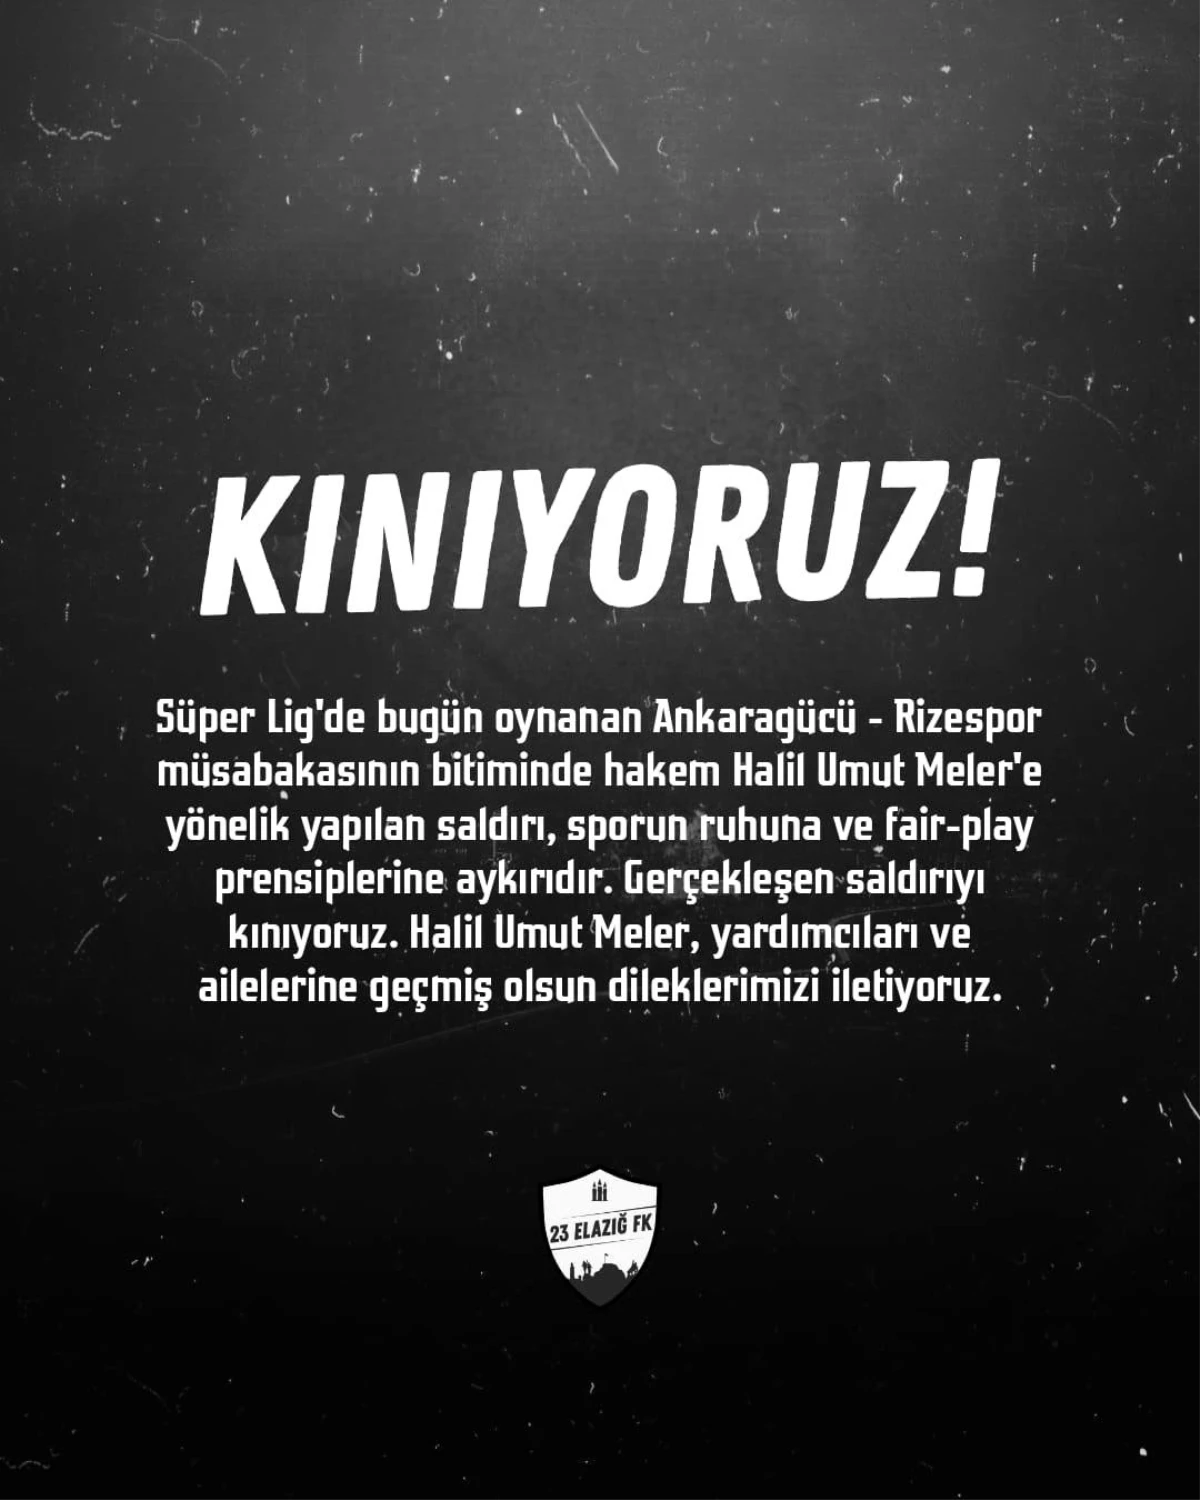 Elazığspor ve 23 Elazığ FK, Hakem Halil Umut Meler\'e yapılan saldırıyı kınadı